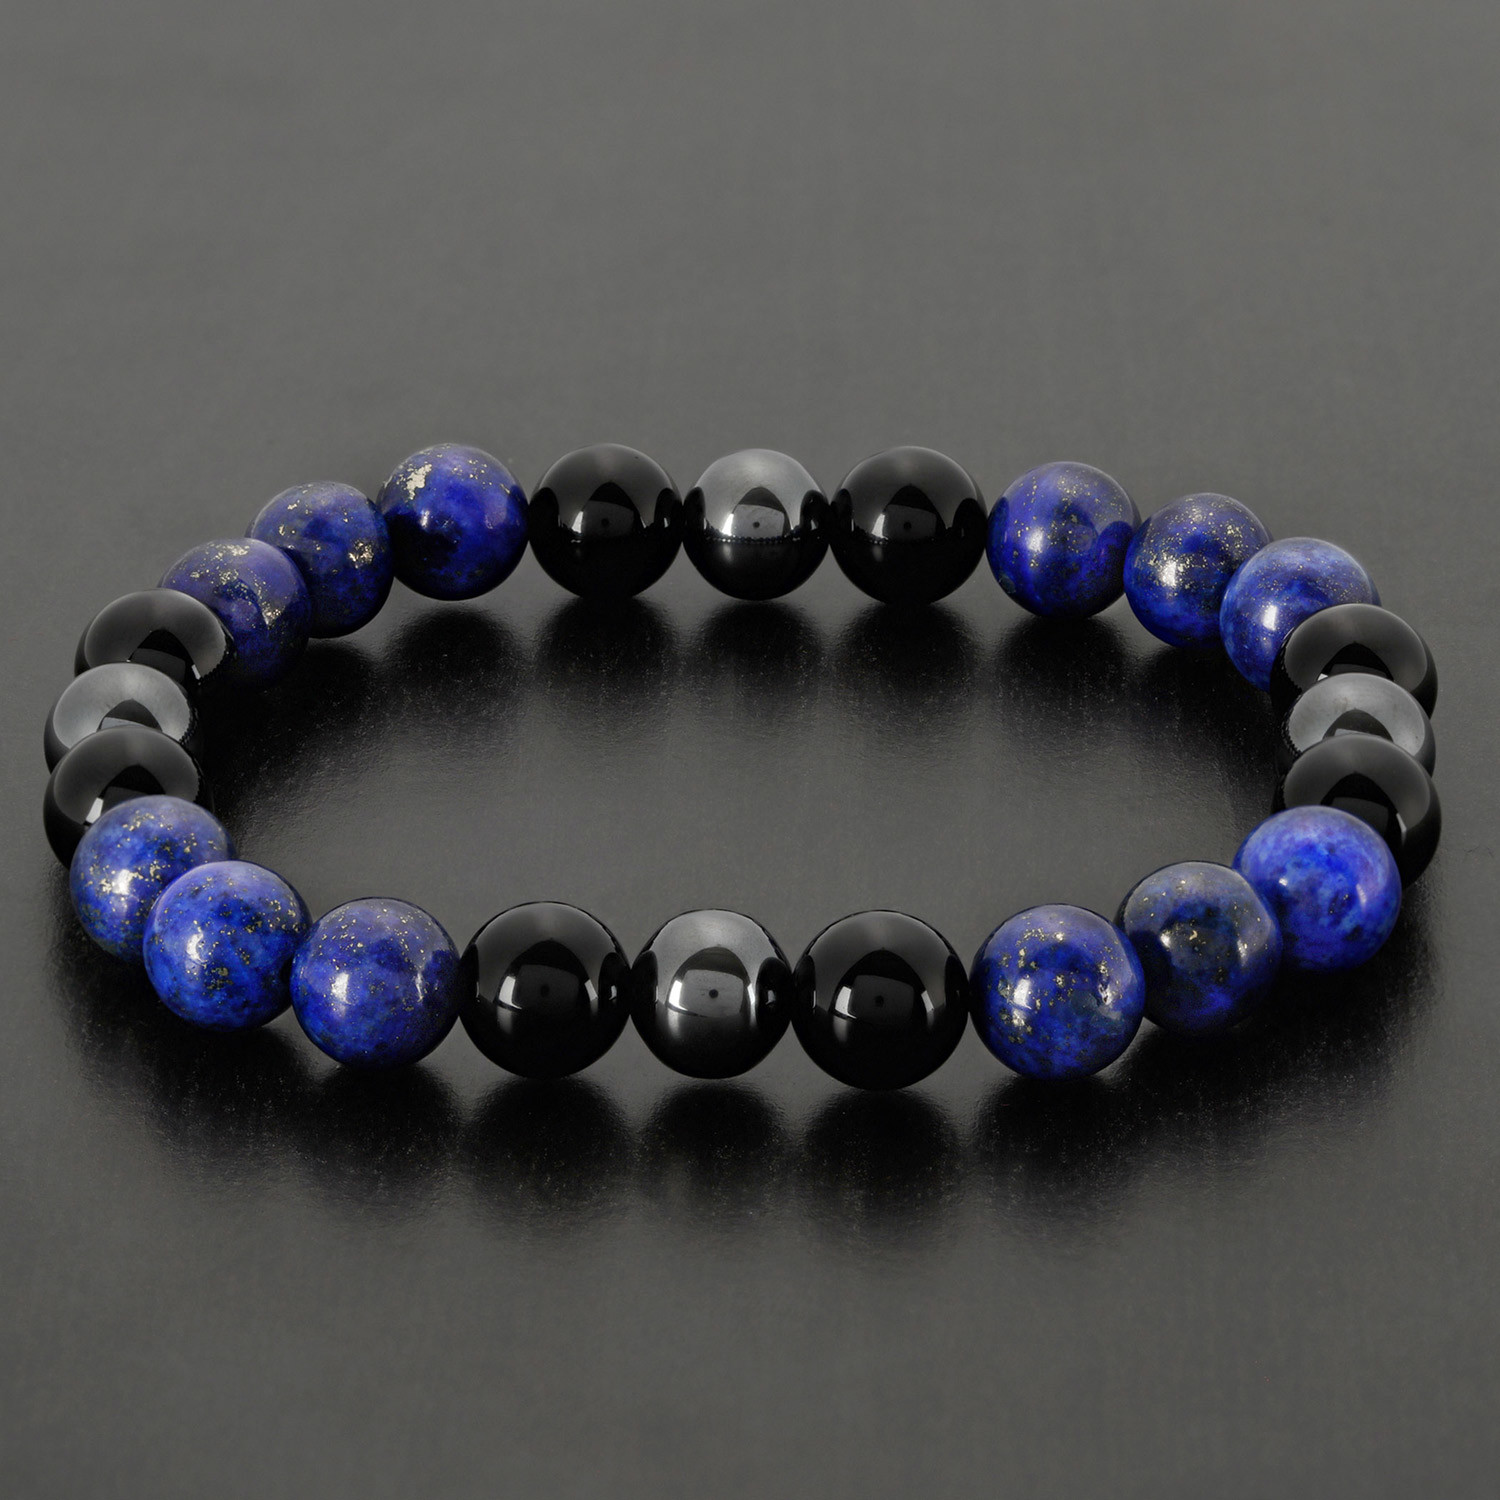 Blue and black bracelet